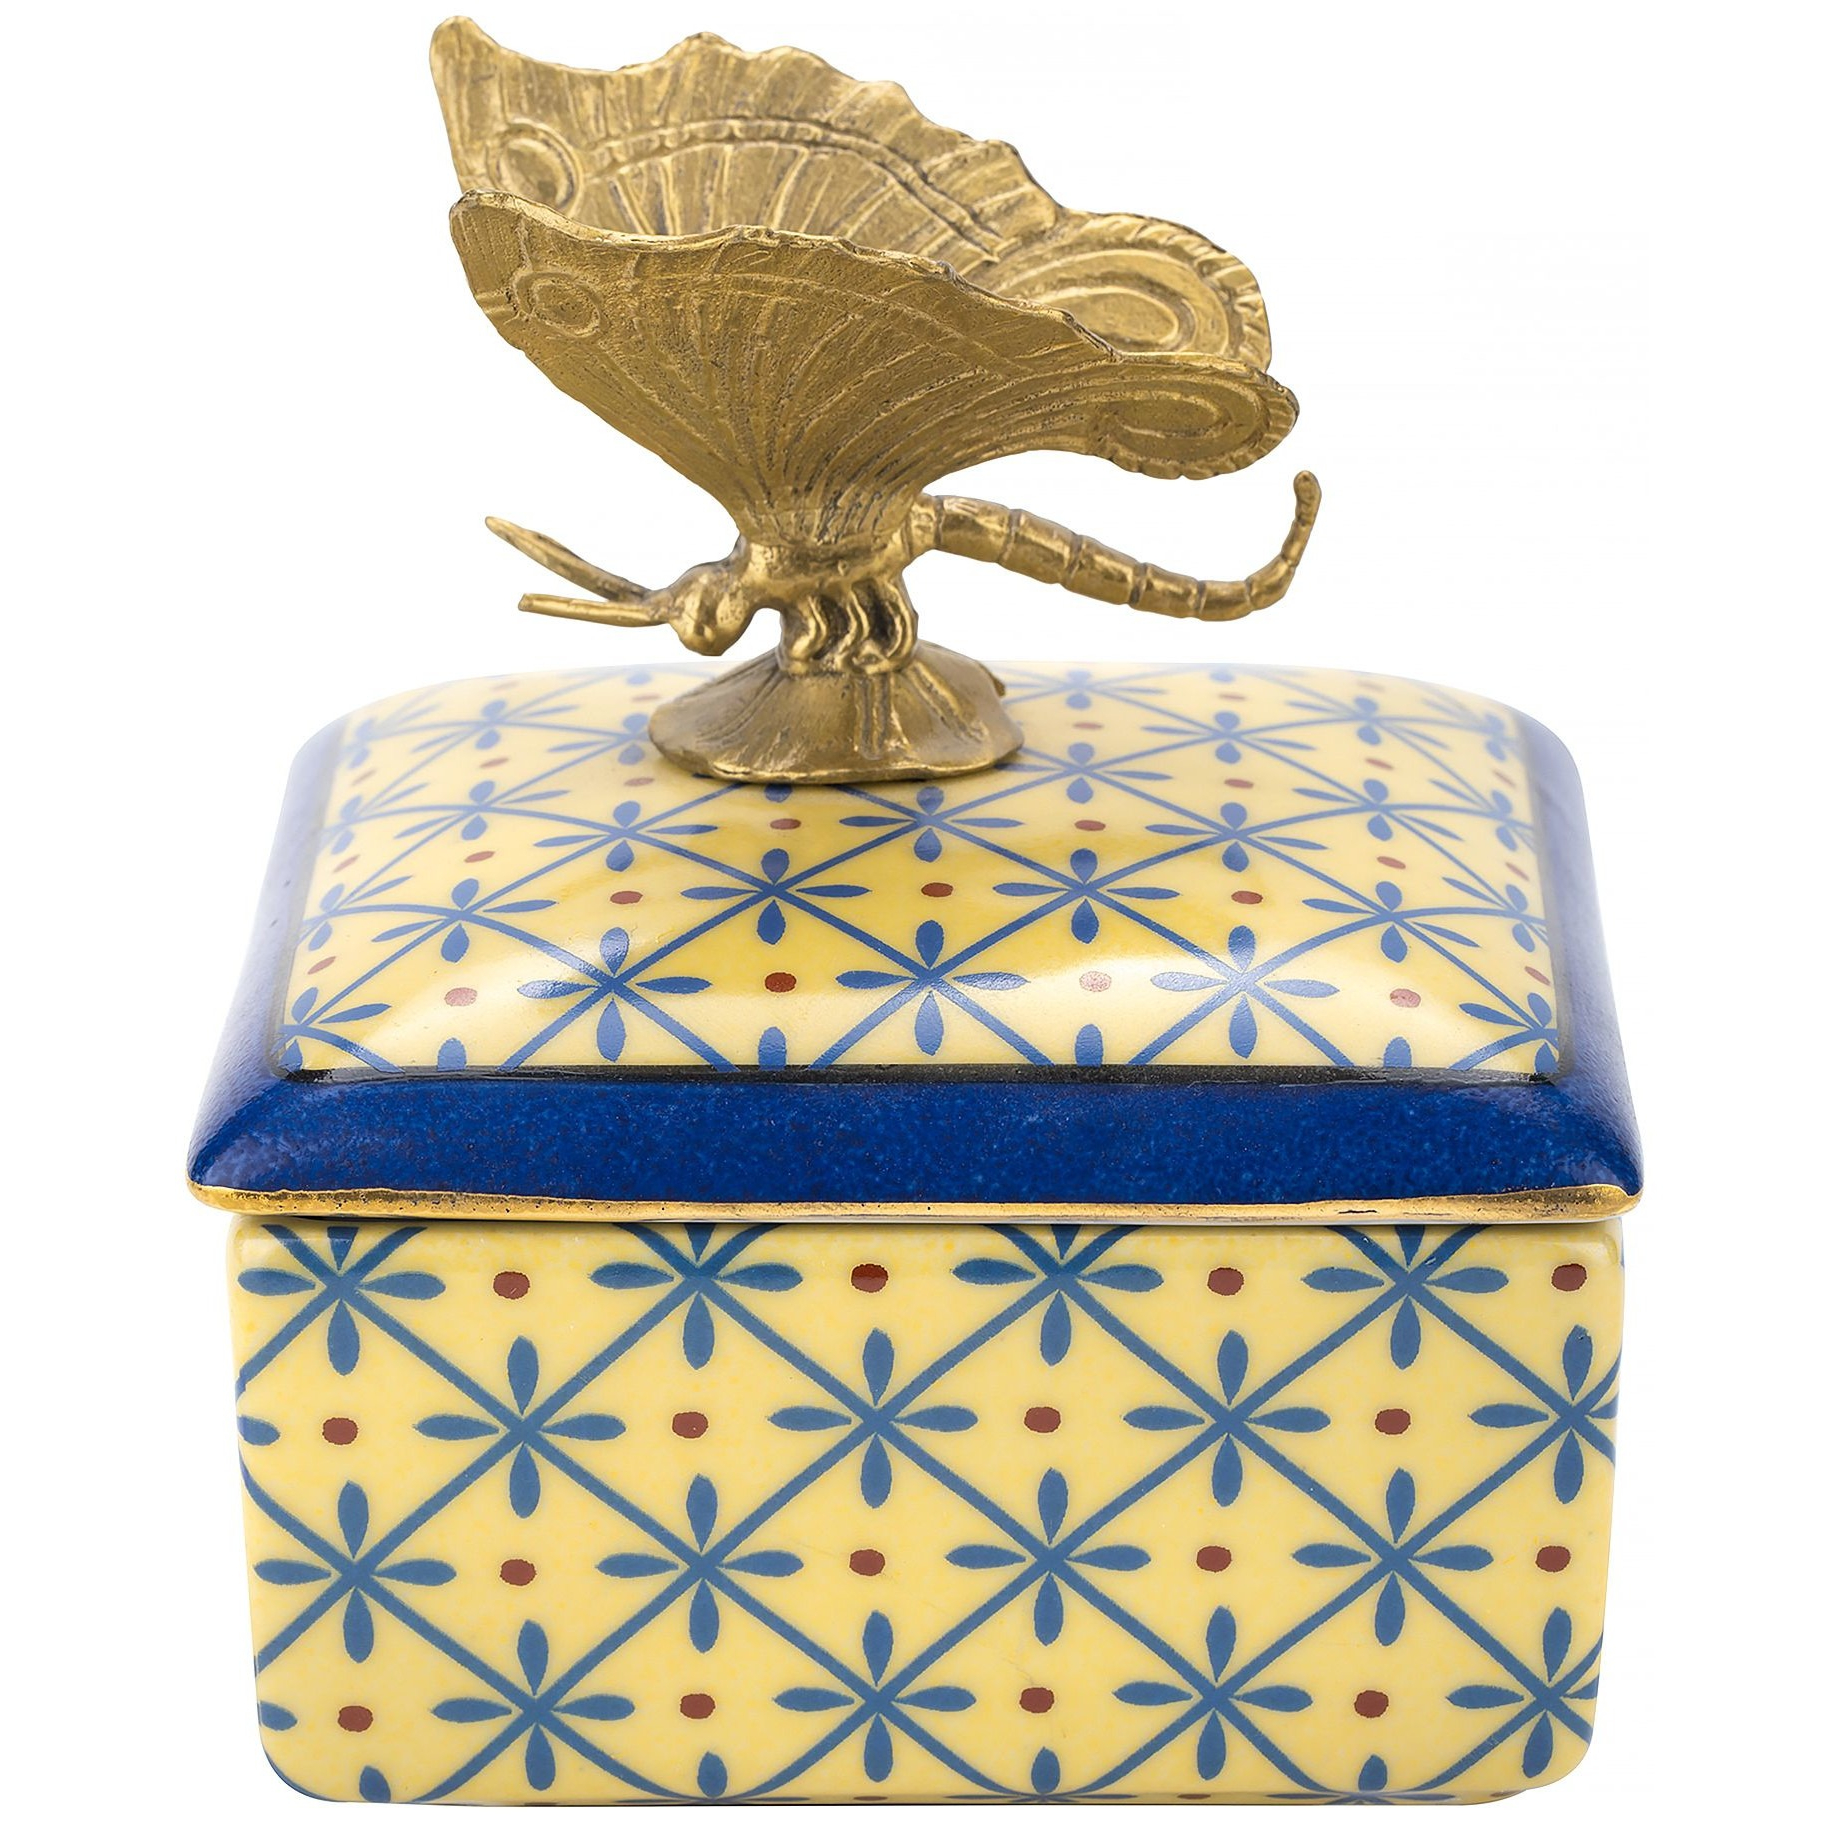 Шкатулка Glasar с бабочкой желтая 10х10х10 см шкатулка glasar синяя с бронзовым ангелом и узорчатым декором 17x17x15 см